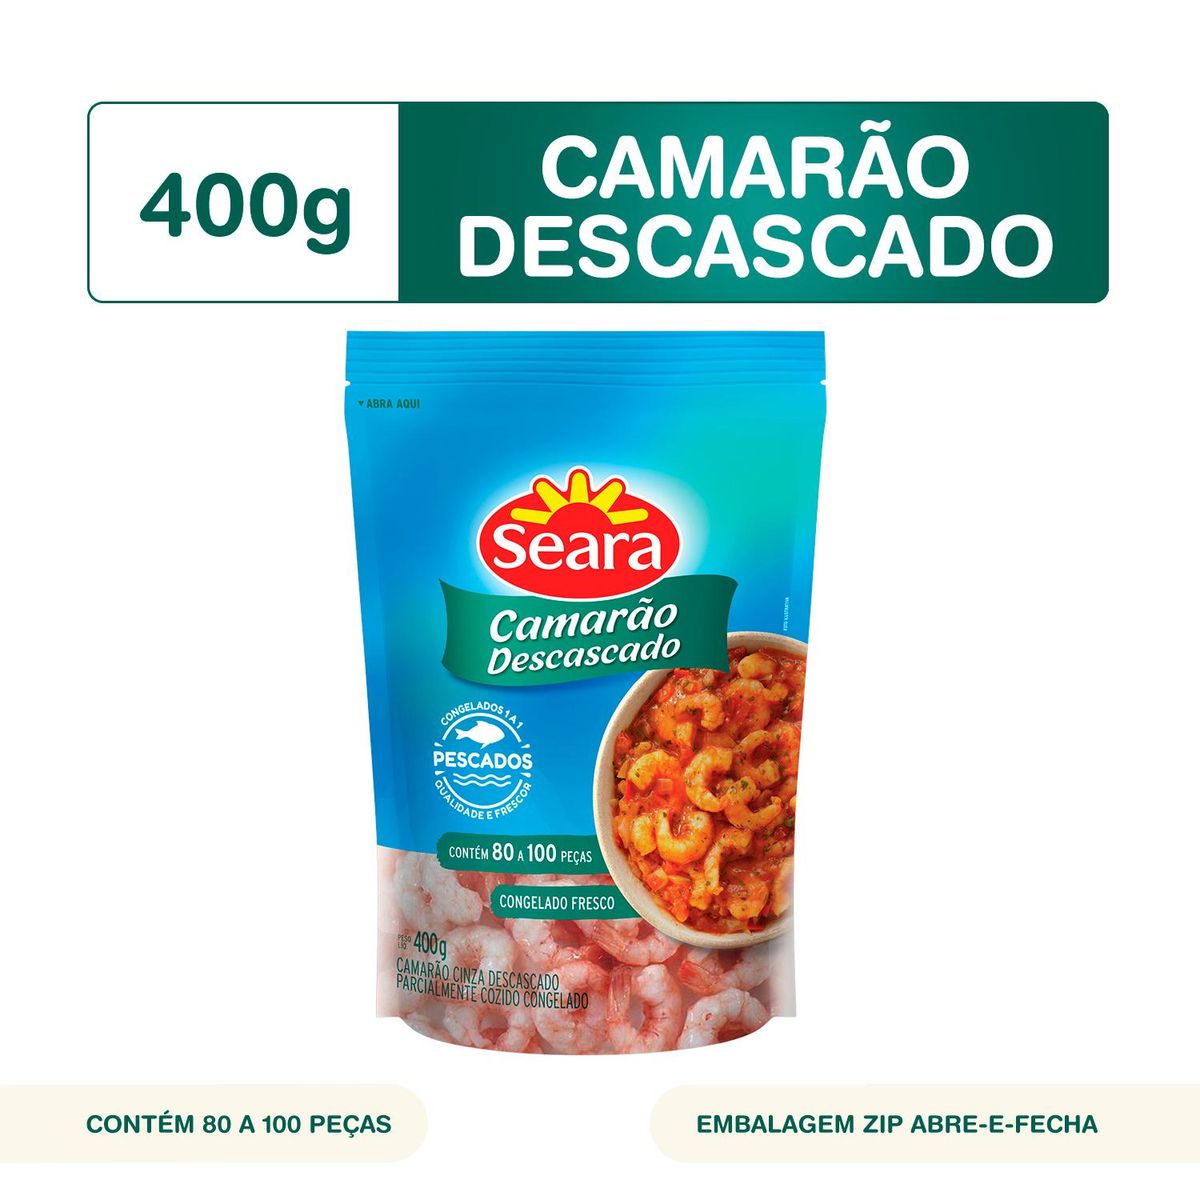 Camarão descascado 80/100 Seara Pescados 400g image number 1